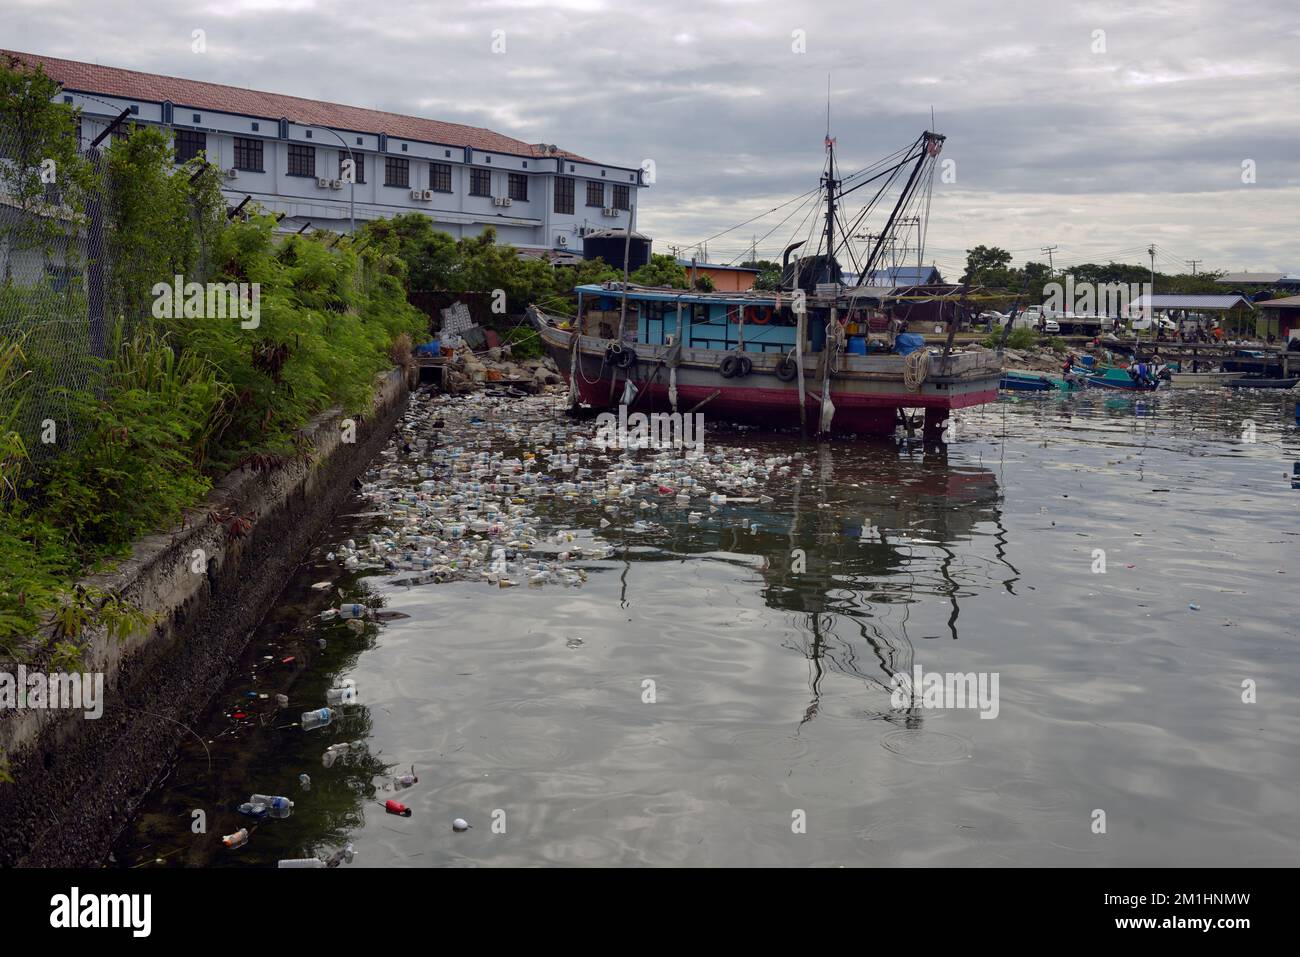 Les bouteilles en plastique jetées polluent le port et menacent l'industrie locale de la pêche à Kudat, Bornéo, en Malaisie. Banque D'Images